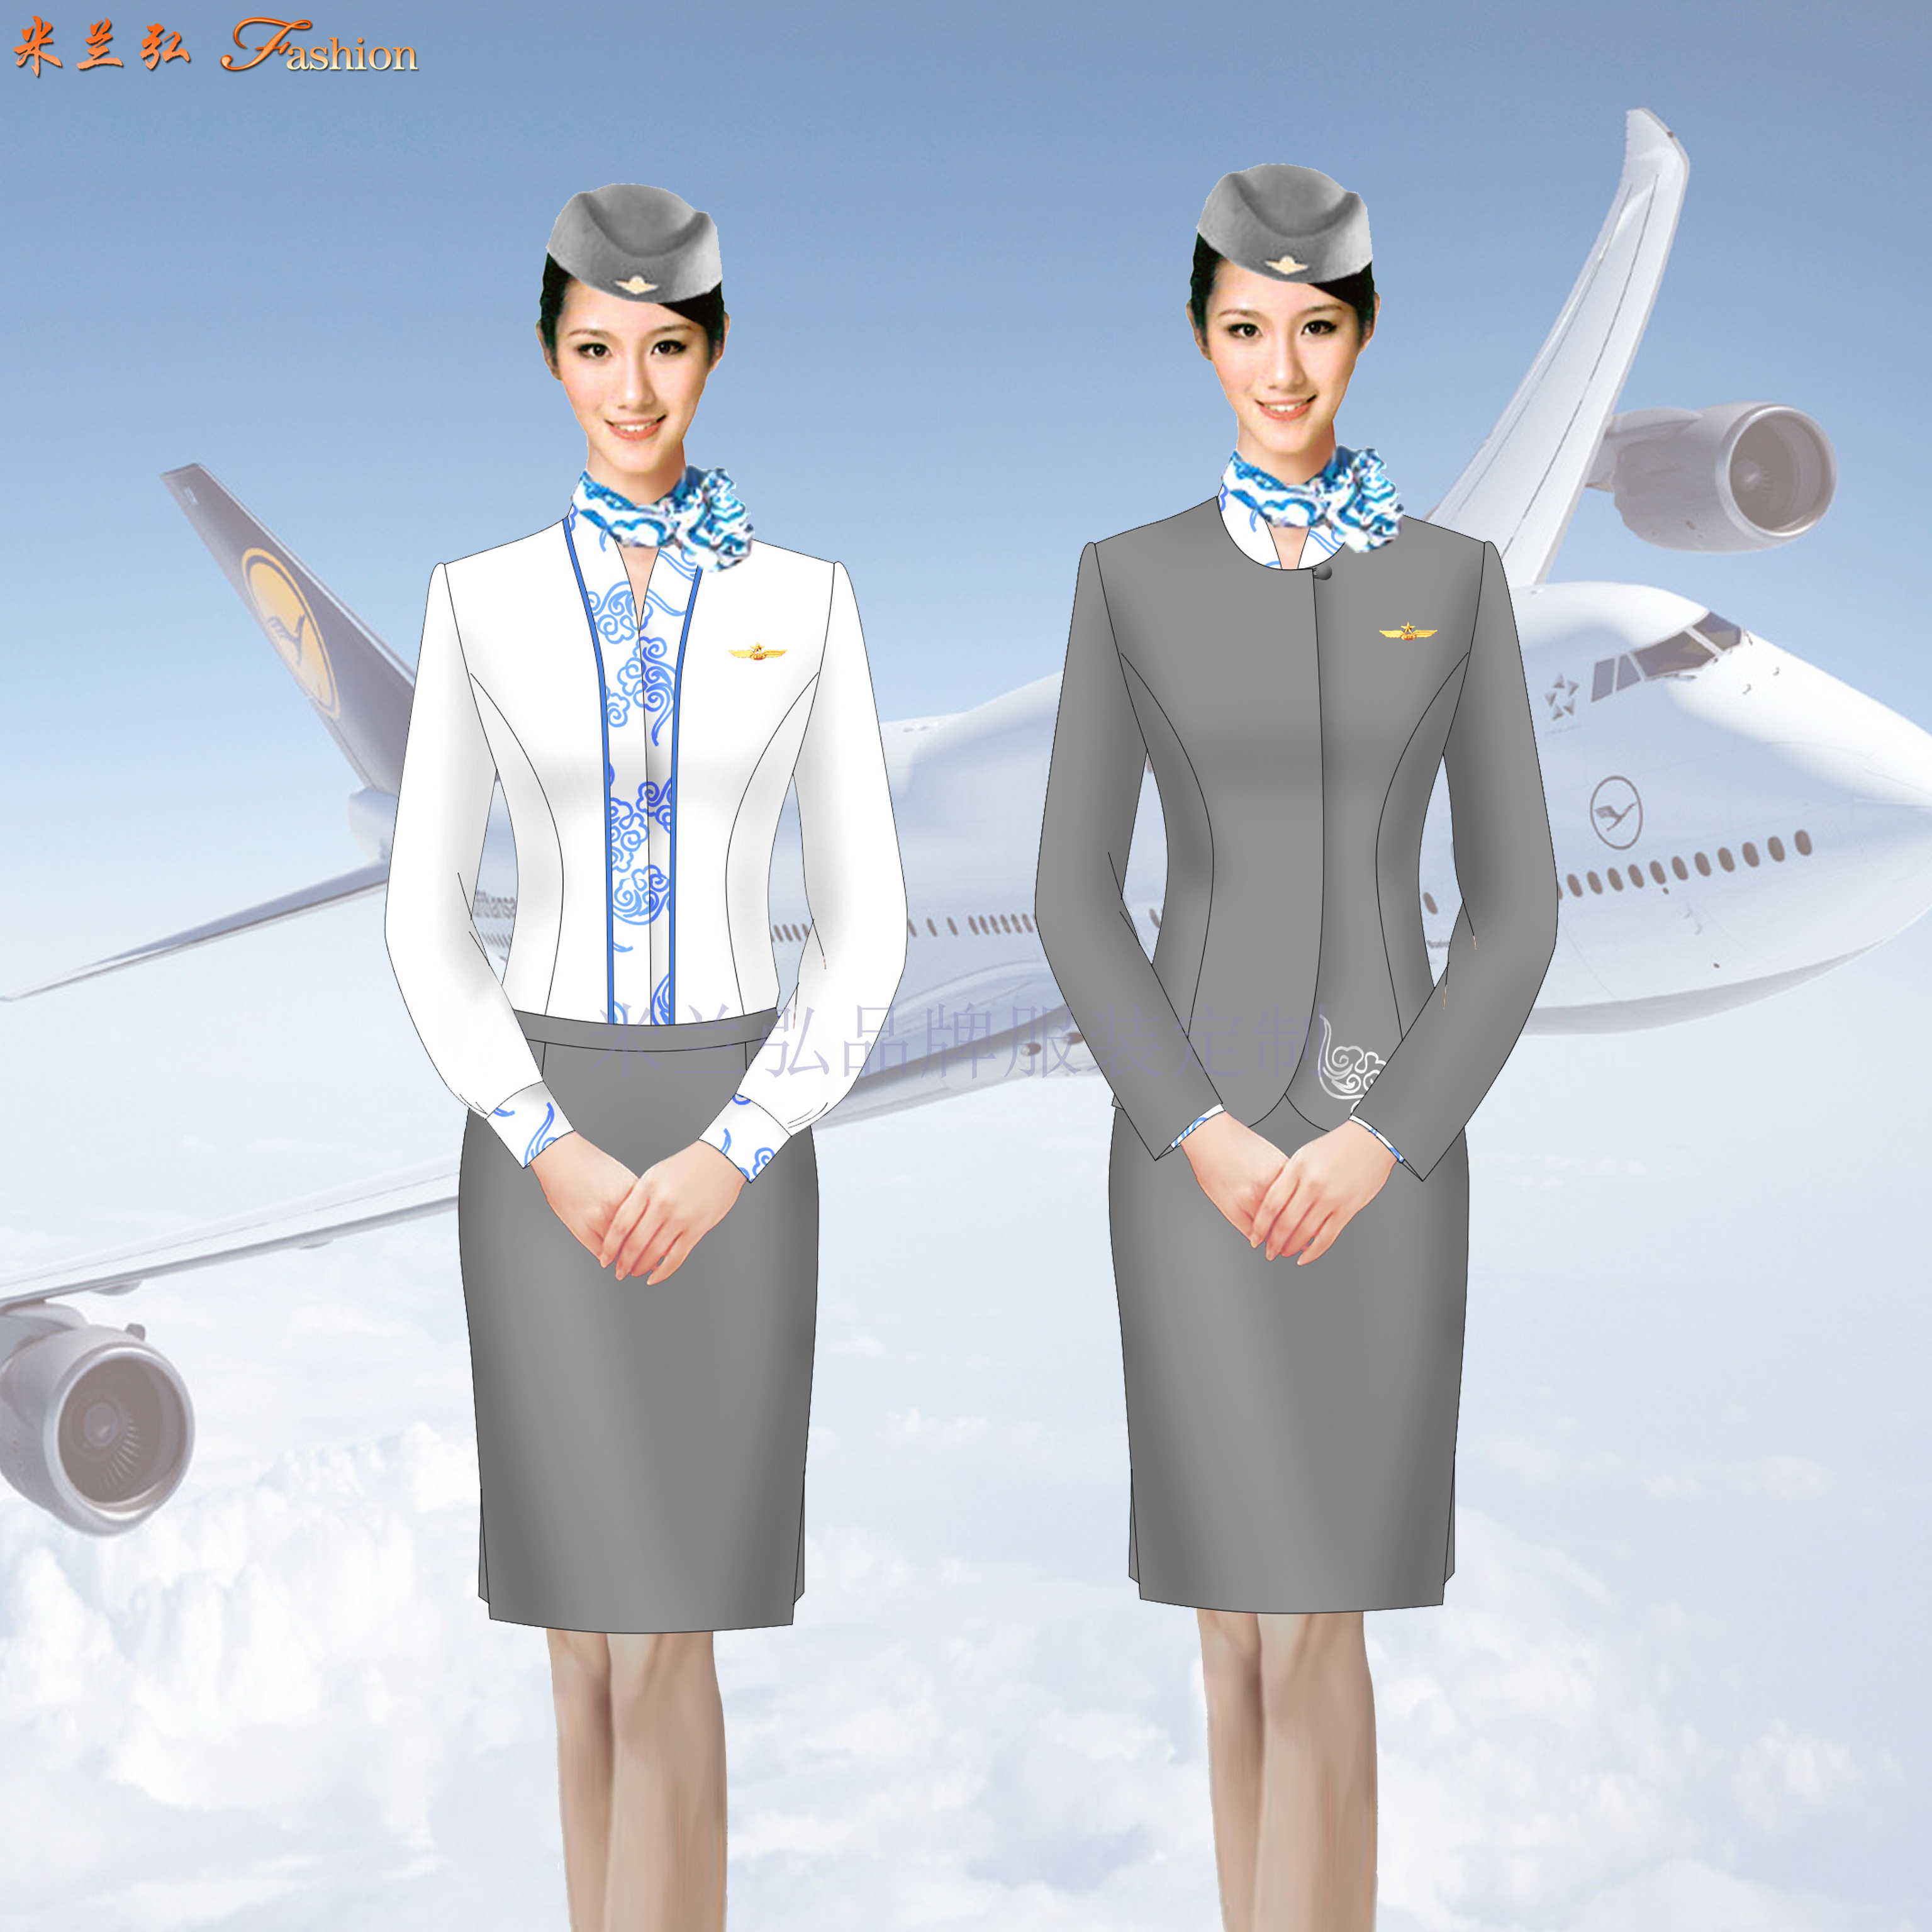 空乘职业装-定做空姐职业装女装套装-米兰弘服装-4